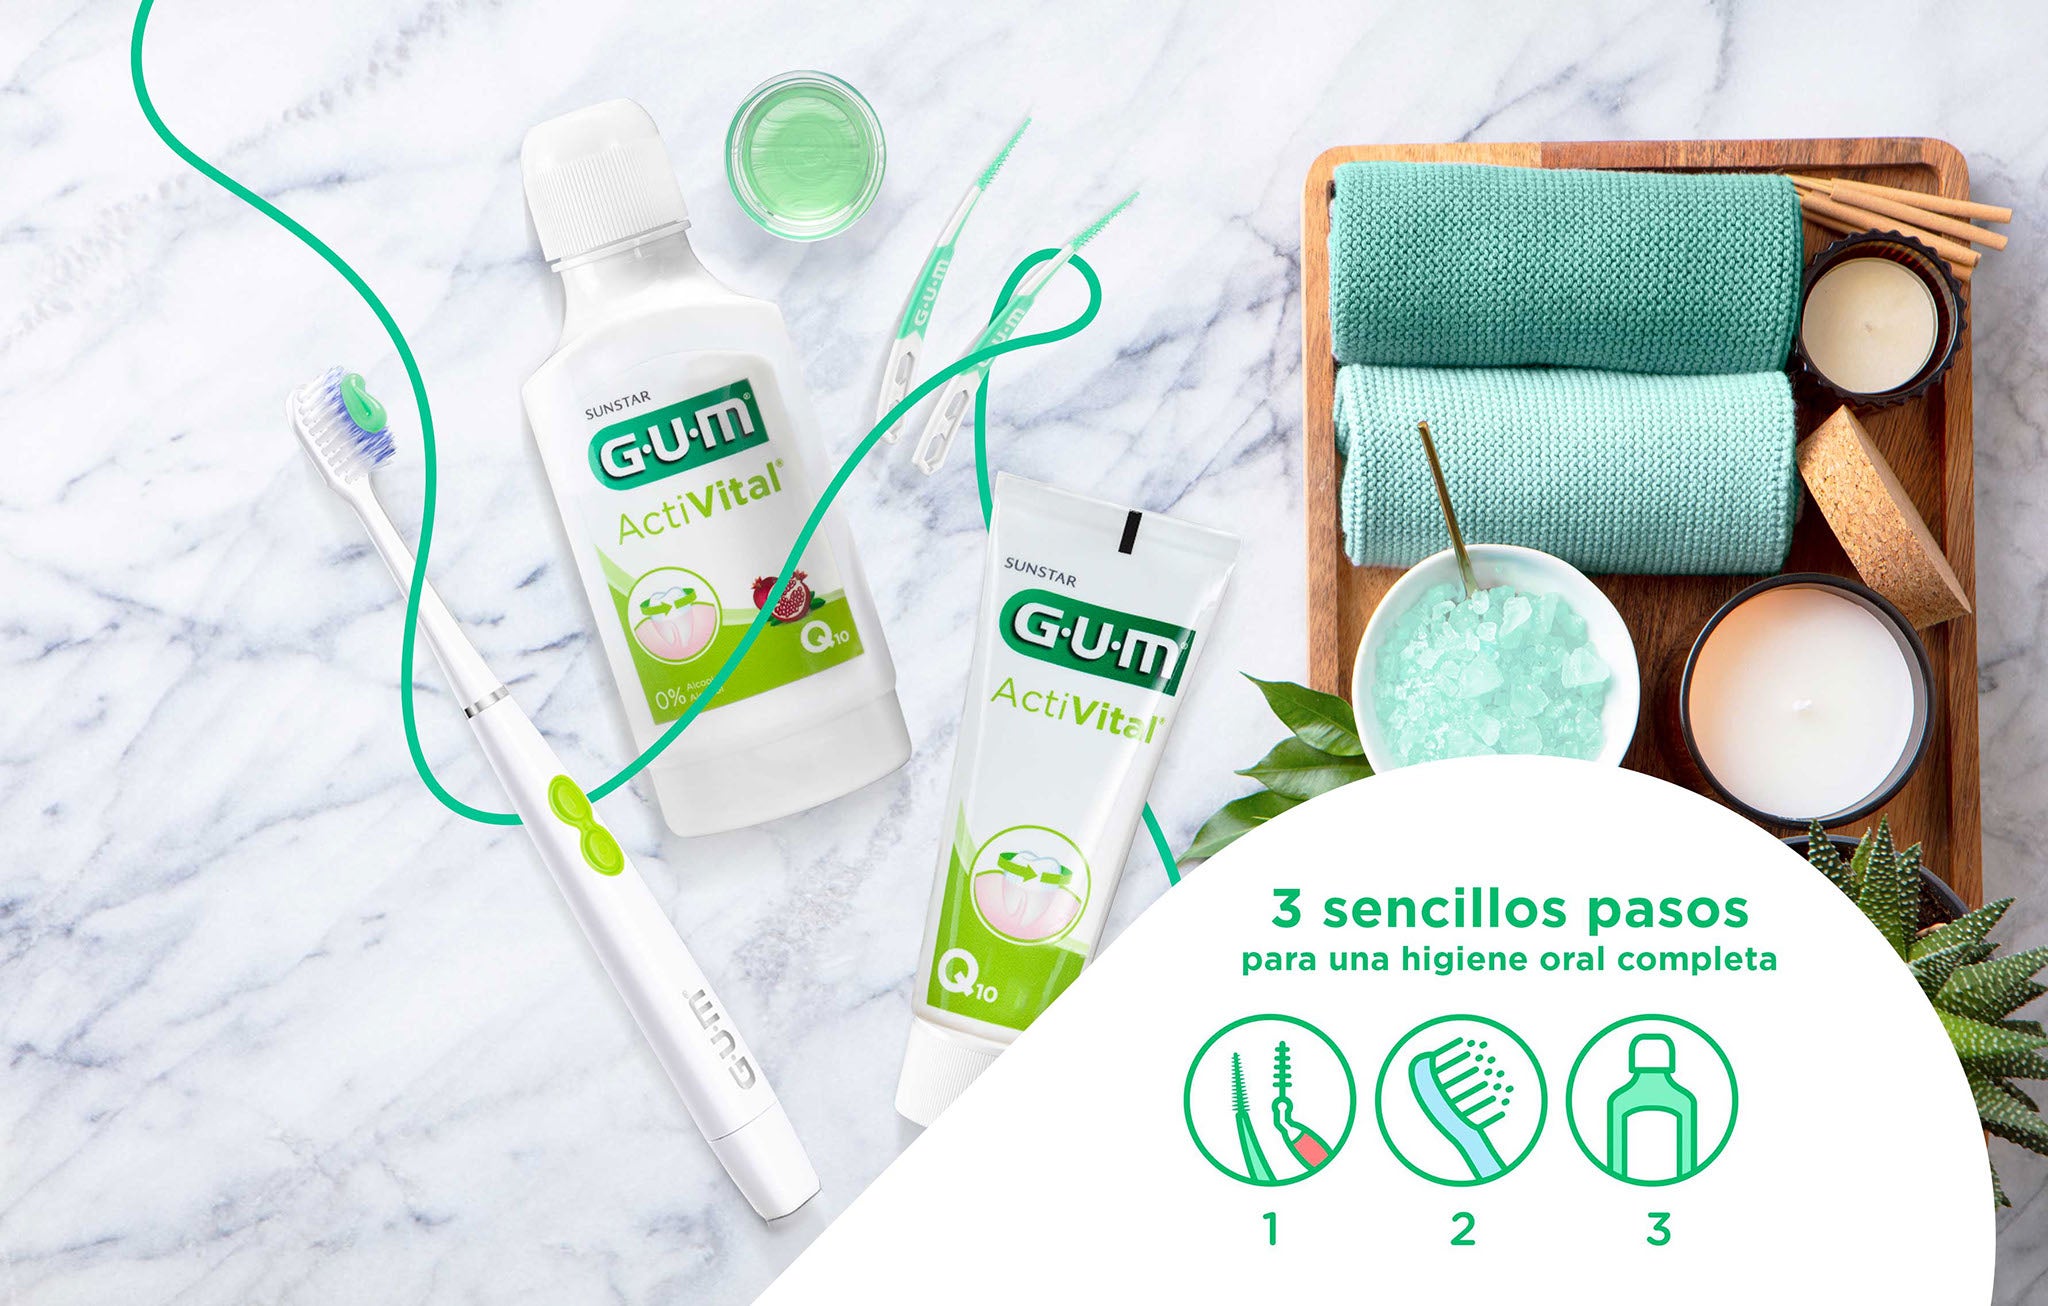 Soluciones de cuidado diario GUM para un ritual de higiene oral completo en tres pasos